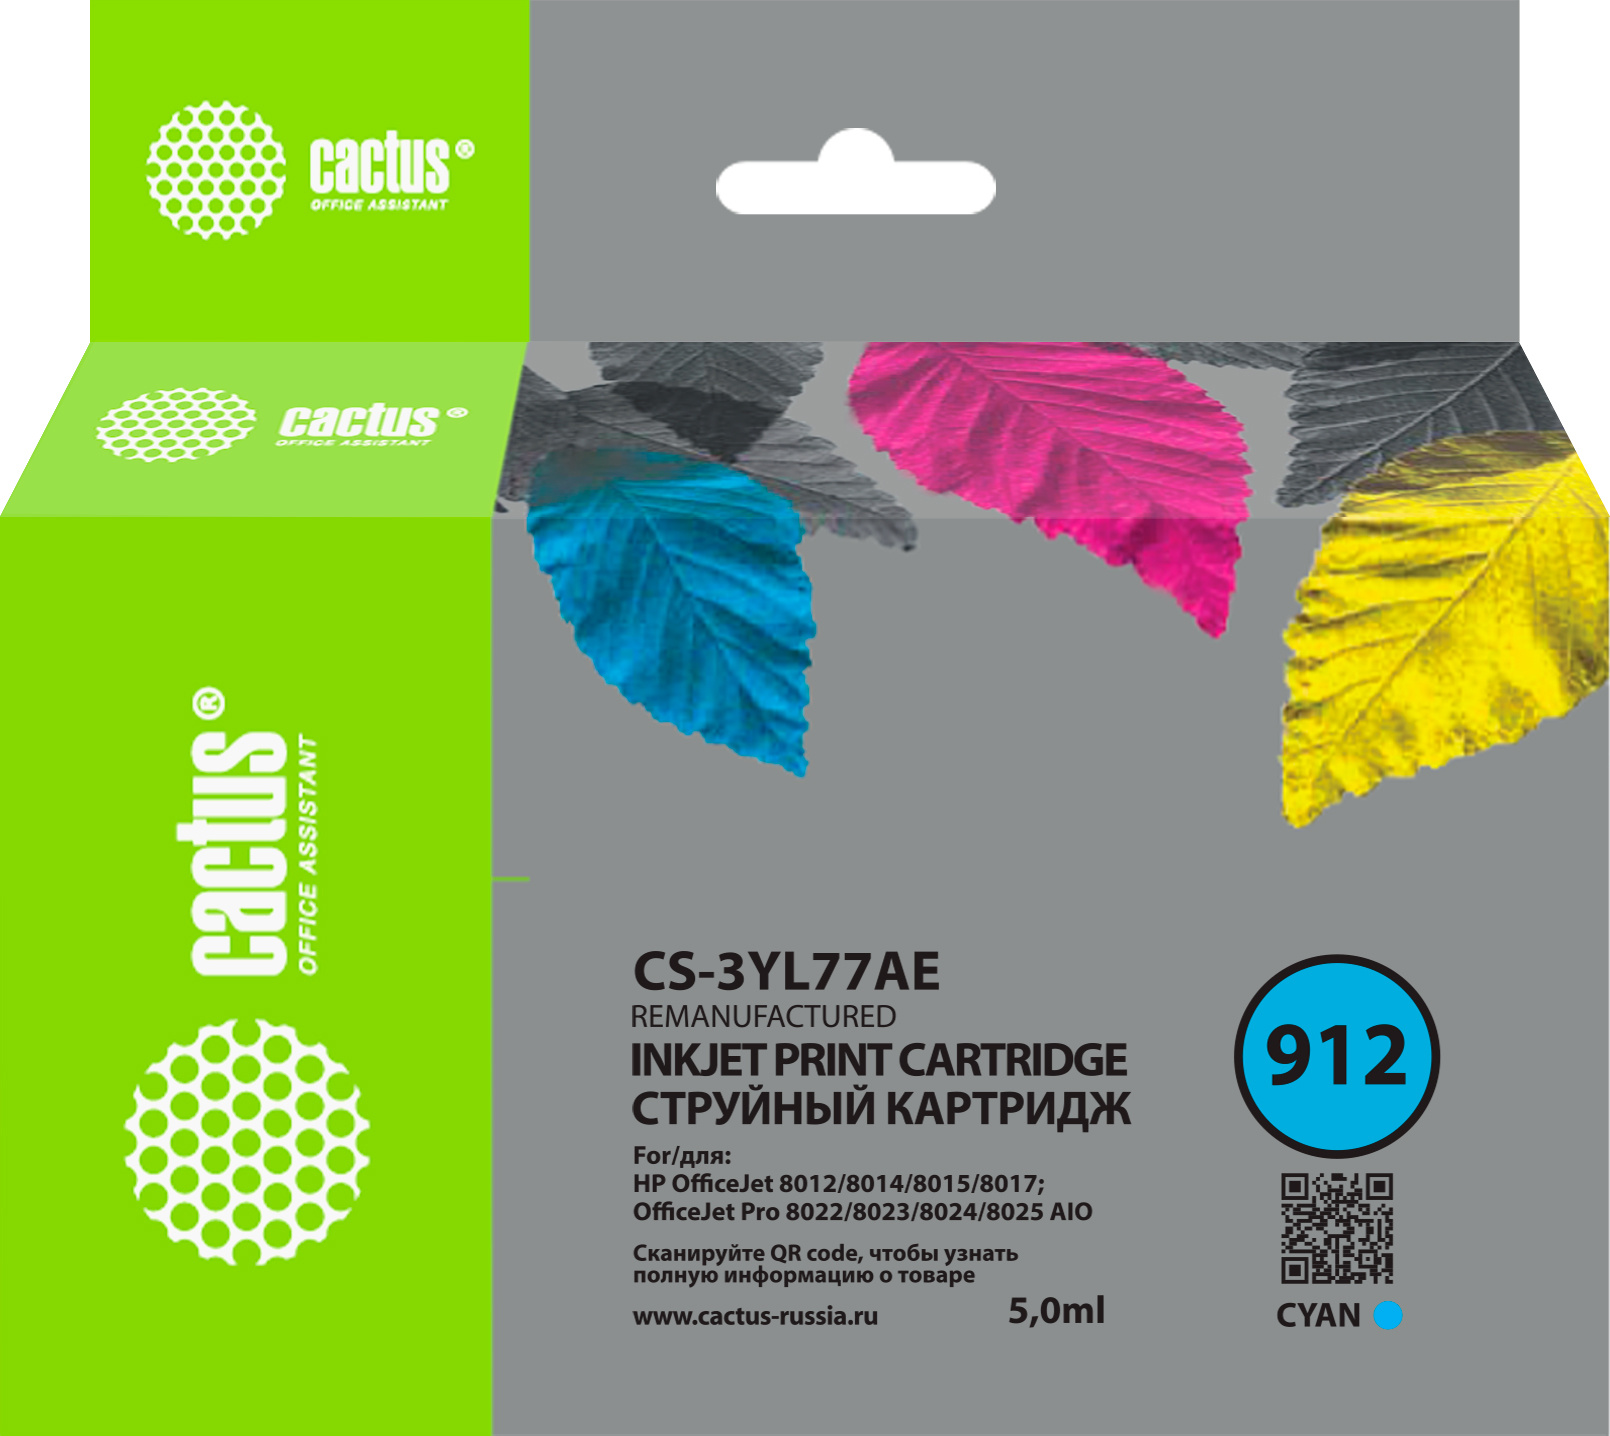 Картридж струйный Cactus CS-3YL77AE 912 голубой (5мл) для HP OfficeJet 8010/8012/8013/8014/8015/8020/8025